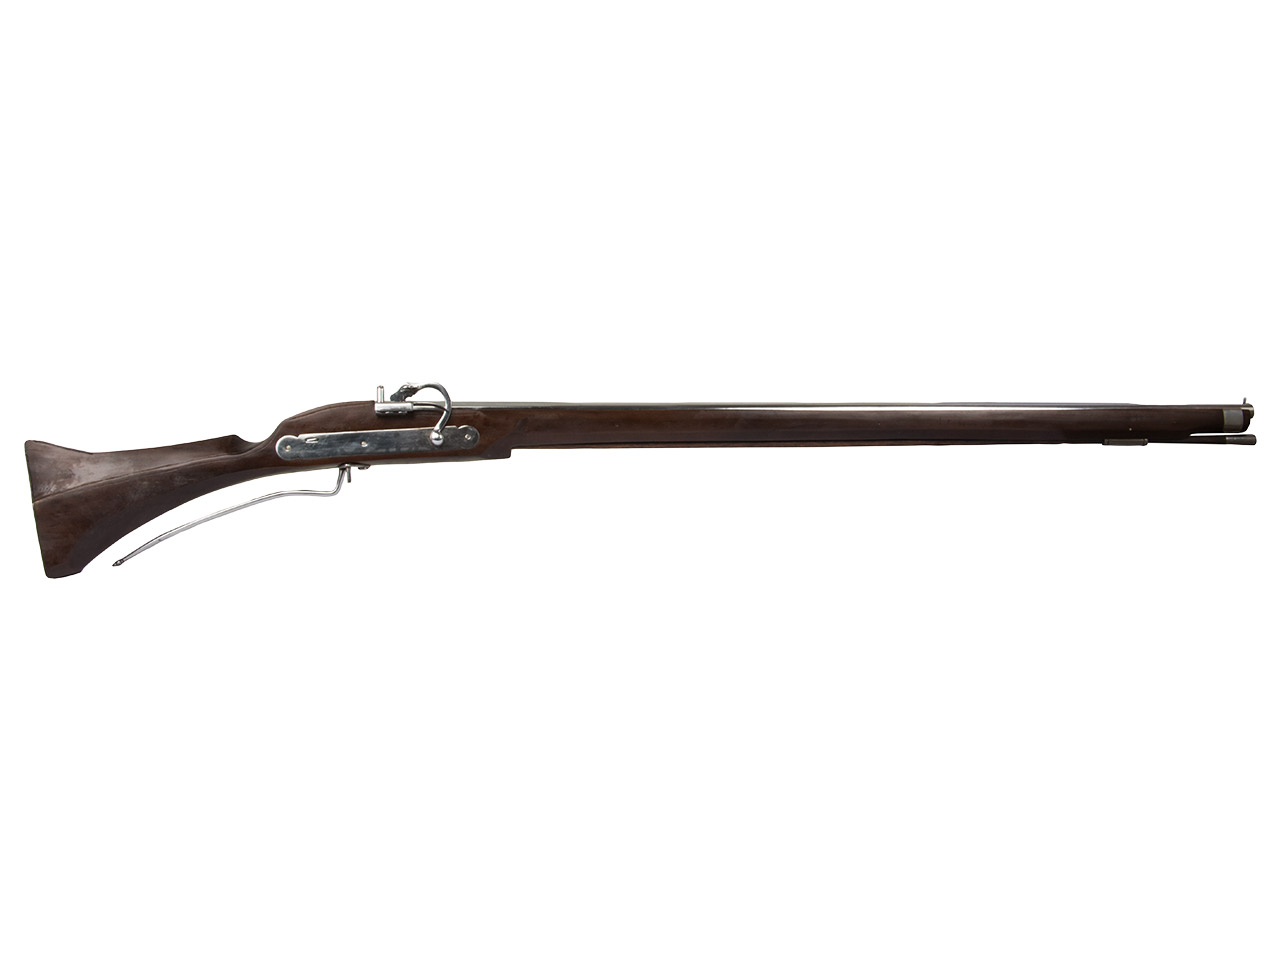 Vorderlader Luntenschlossgewehr Matchlock Musket Kaliber .75 bzw. 19 mm (P18)